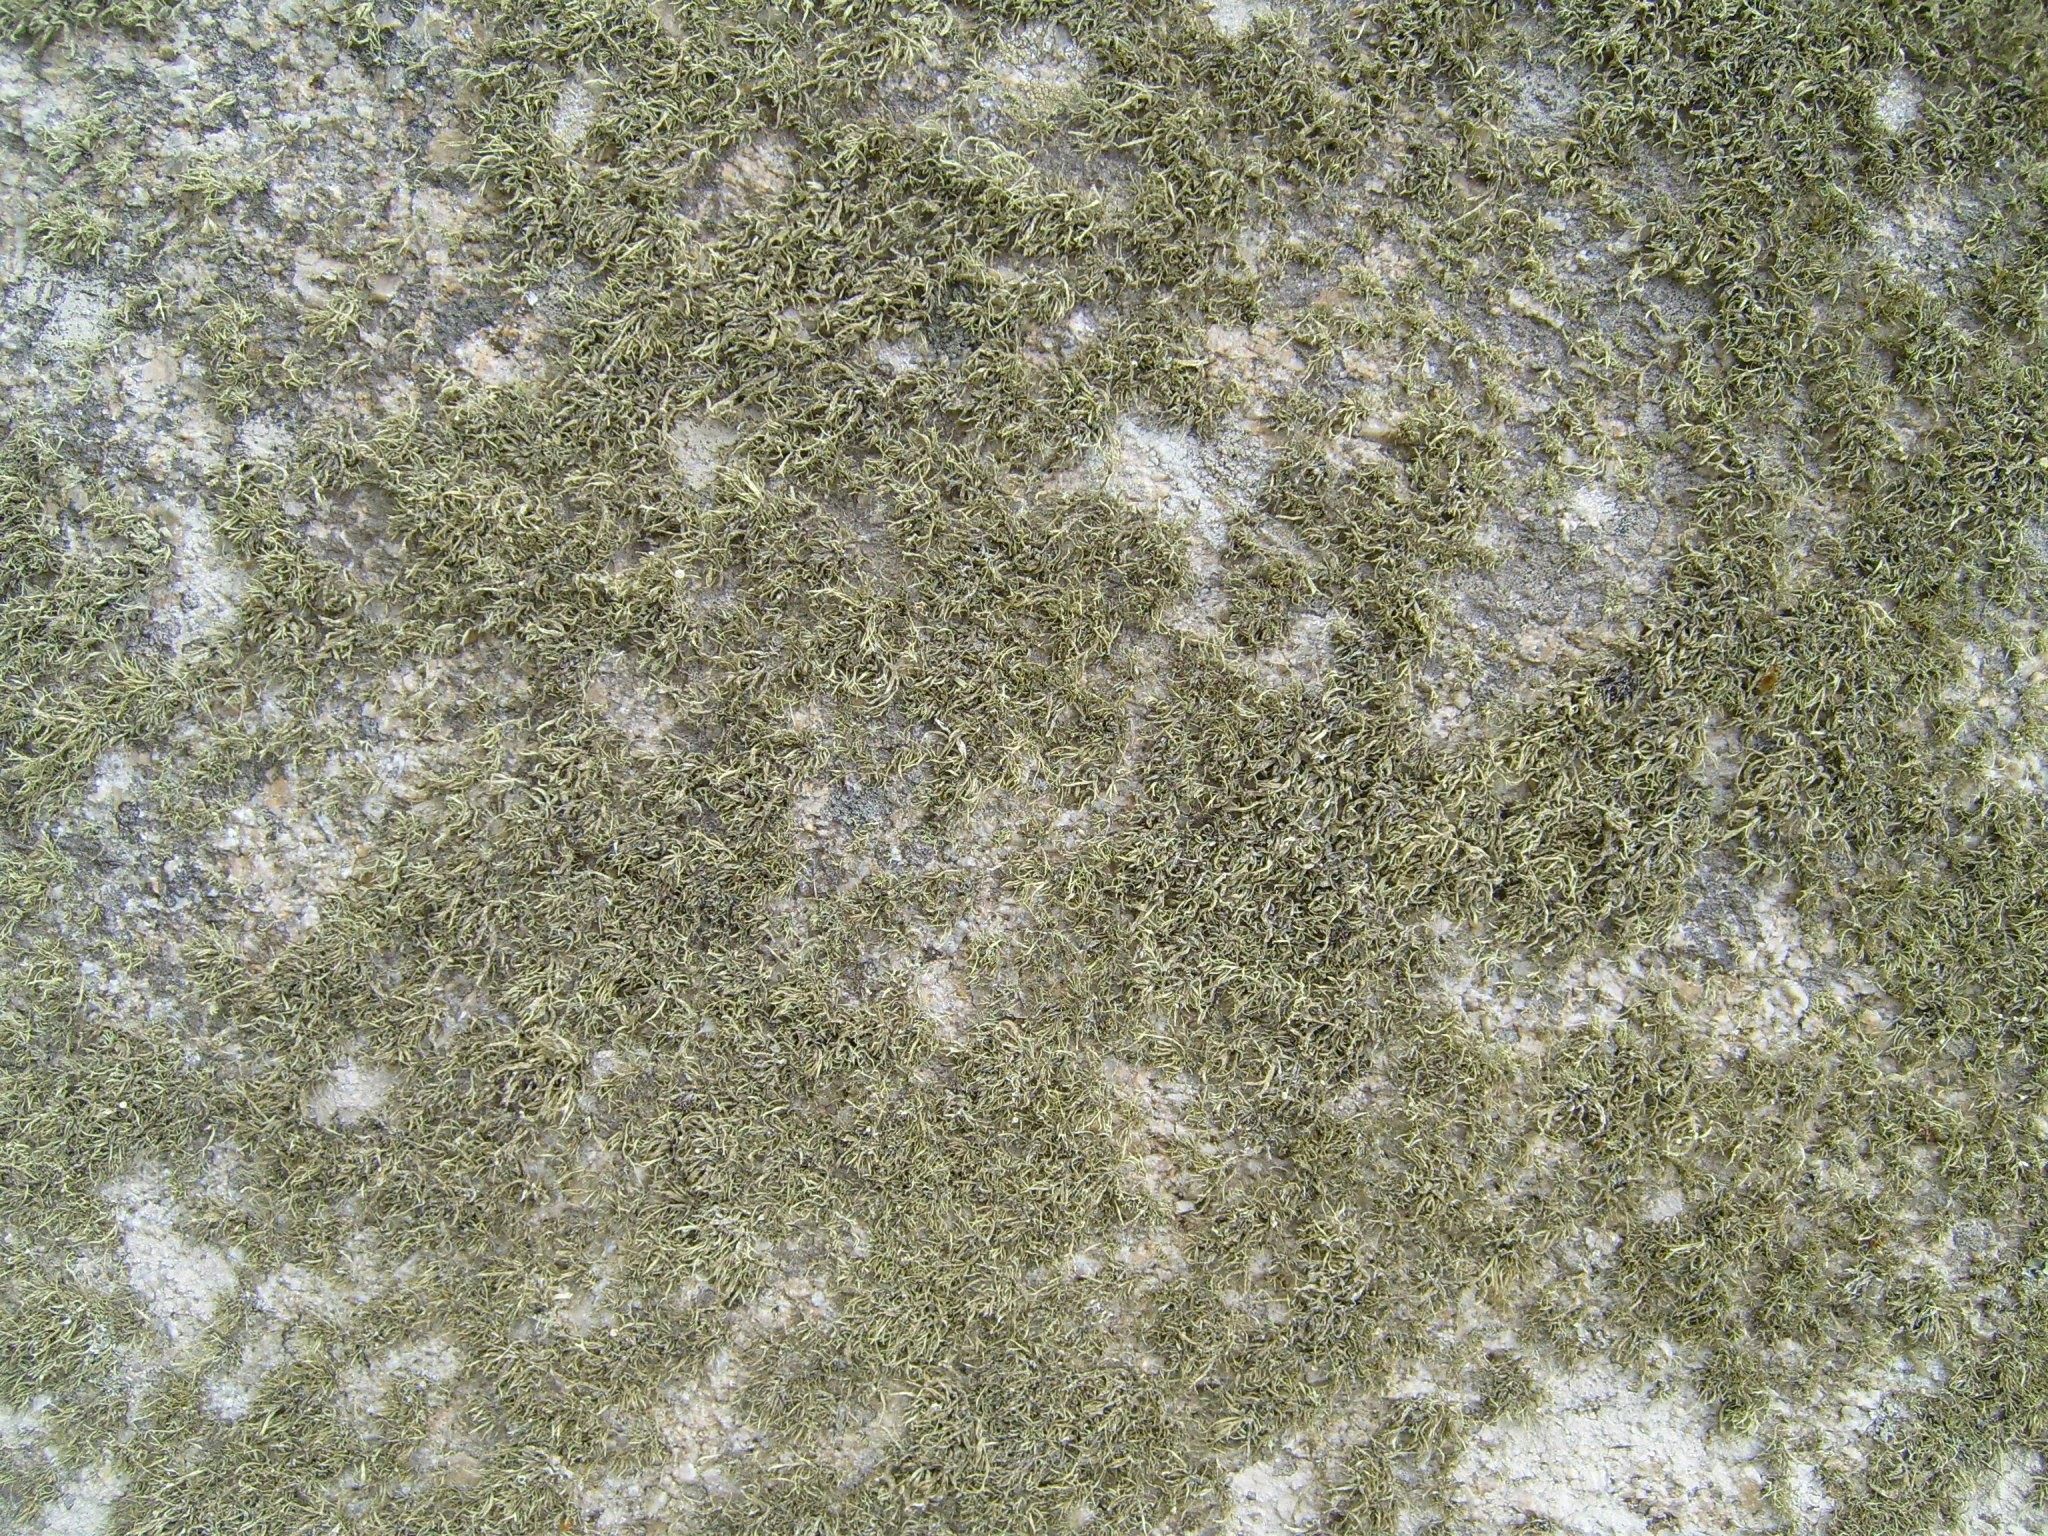 Free picture: granite, mossy, lichen